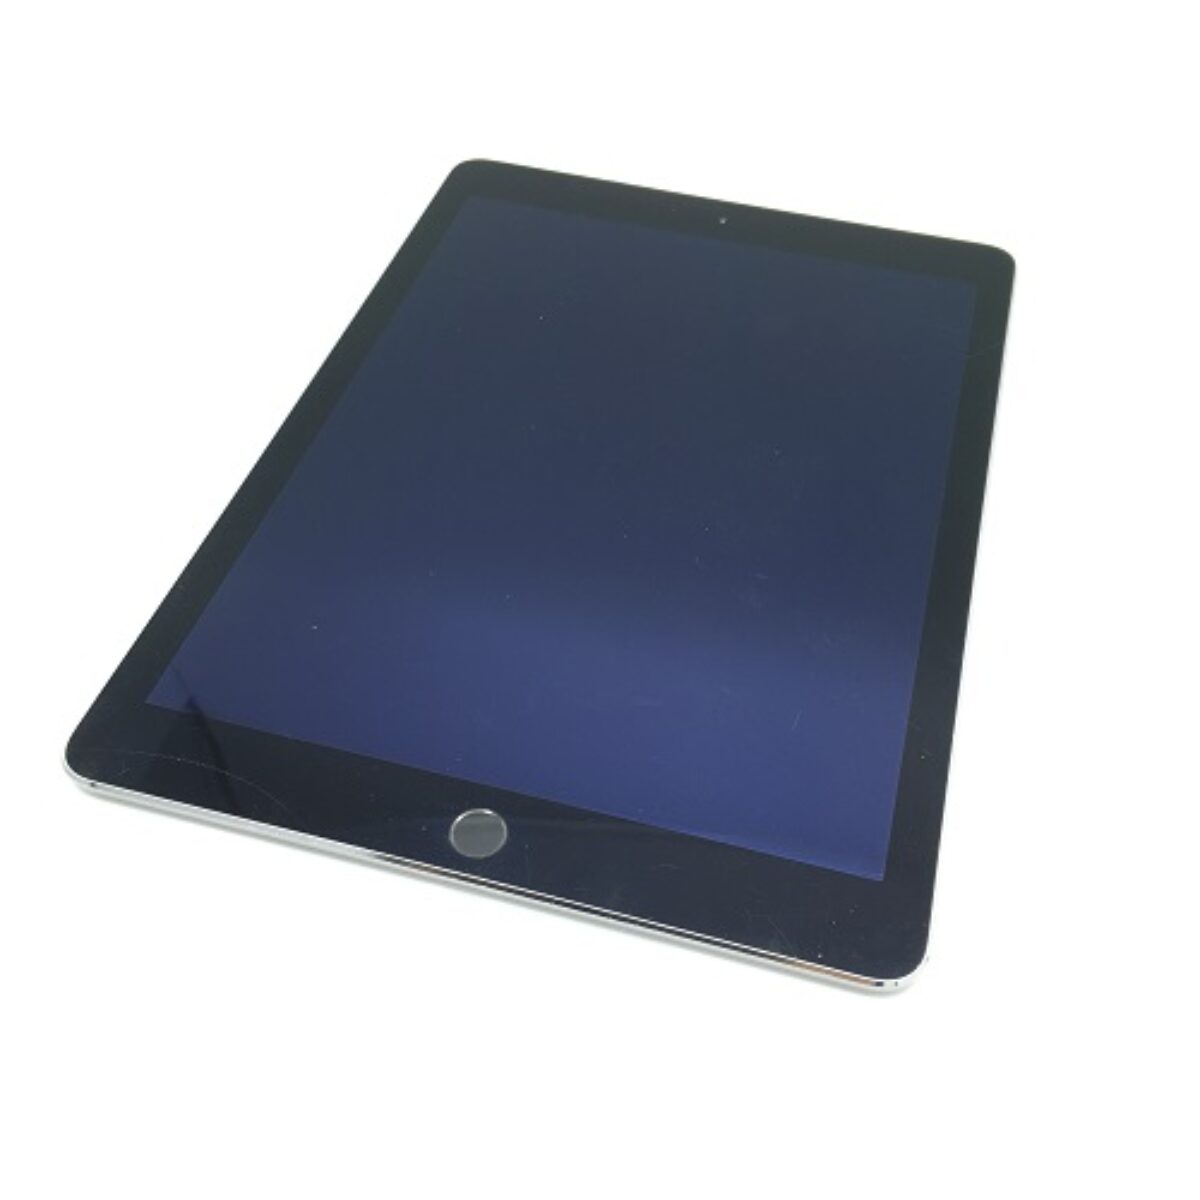 画面割れ】Apple(アップル)iPad Air2 A1566(MGL12J/A)の買取価格と査定 ...